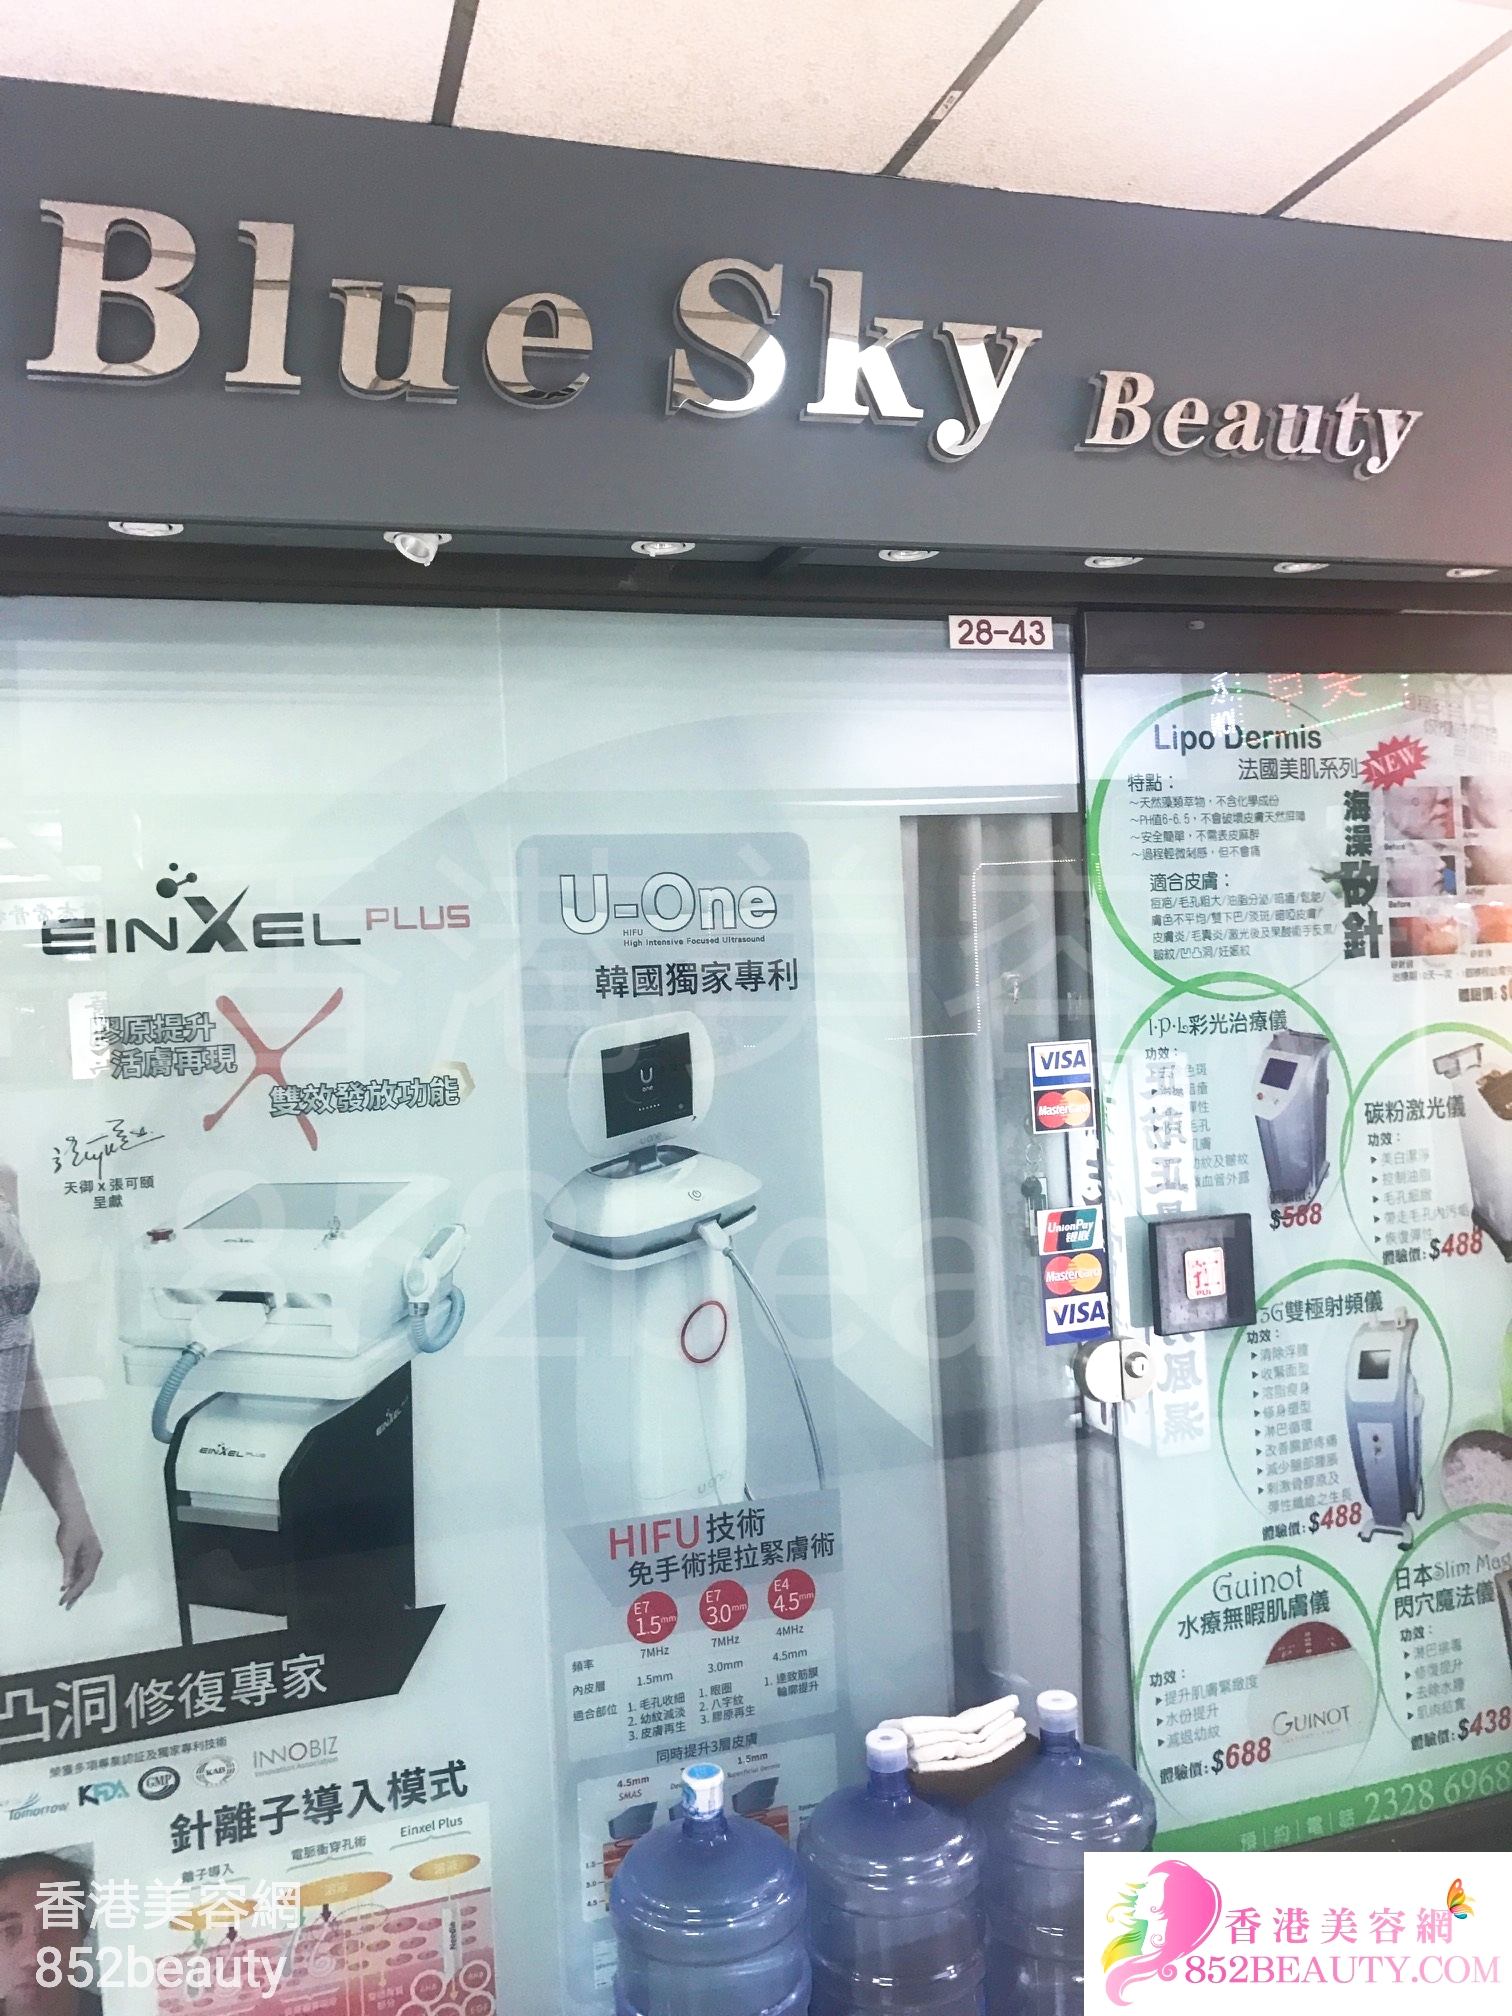 美容院 Beauty Salon: Blue Sky Beauty